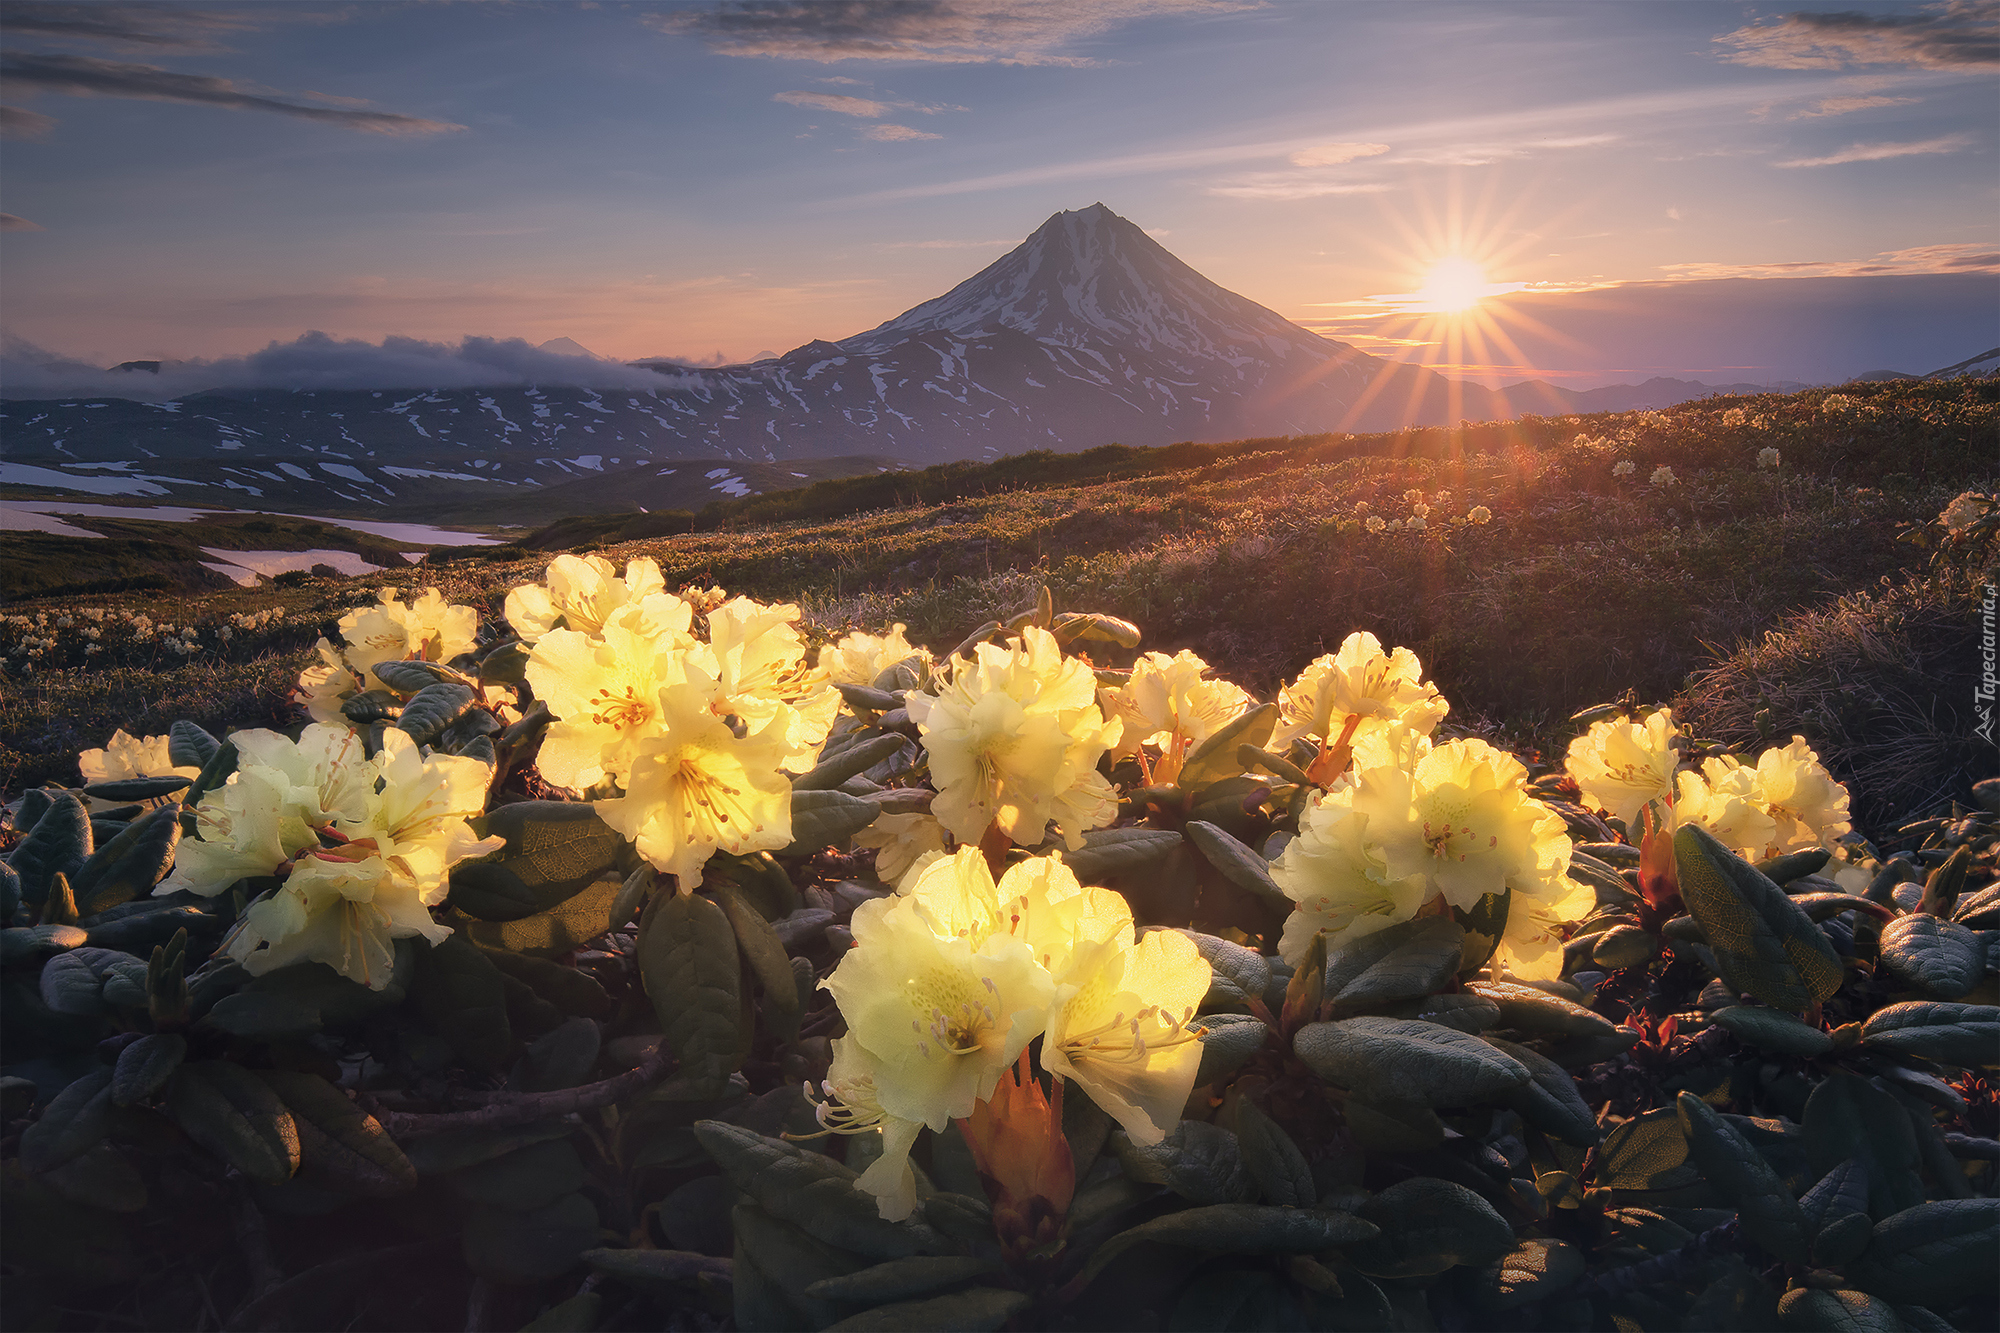 Kwiaty, Żółte, Różaneczniki, Rododendrony, Góry Wschodnie, Stratowulkan Wiluczyński, Kamczatka, Rosja